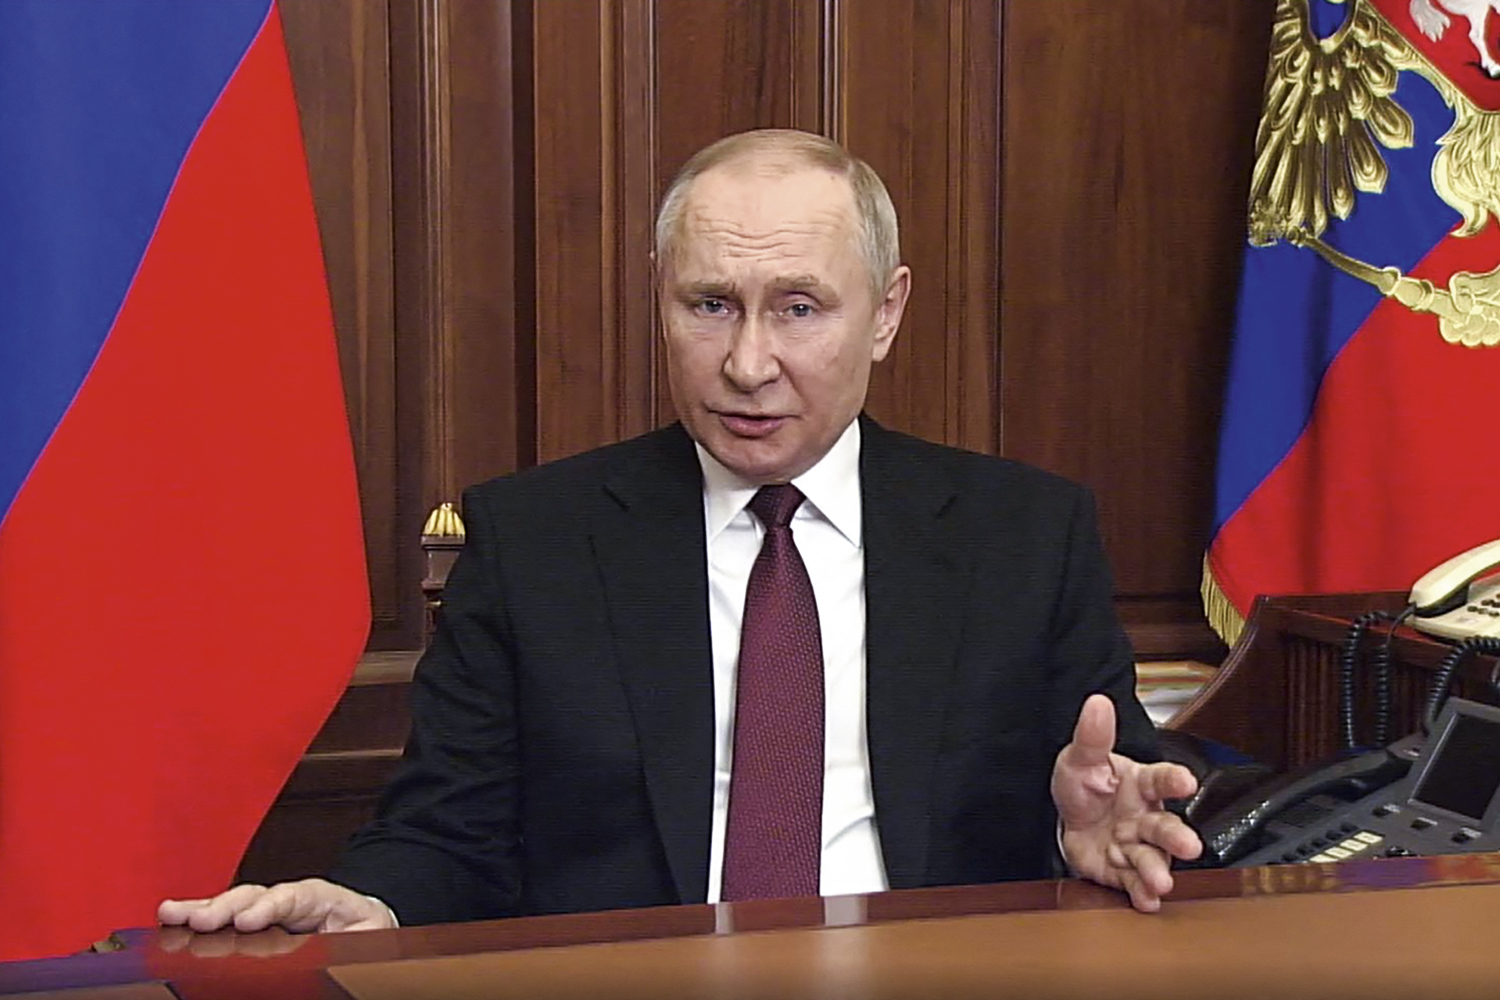 AVISO - Putin: quem intervier verá “consequências jamais experimentadas” -